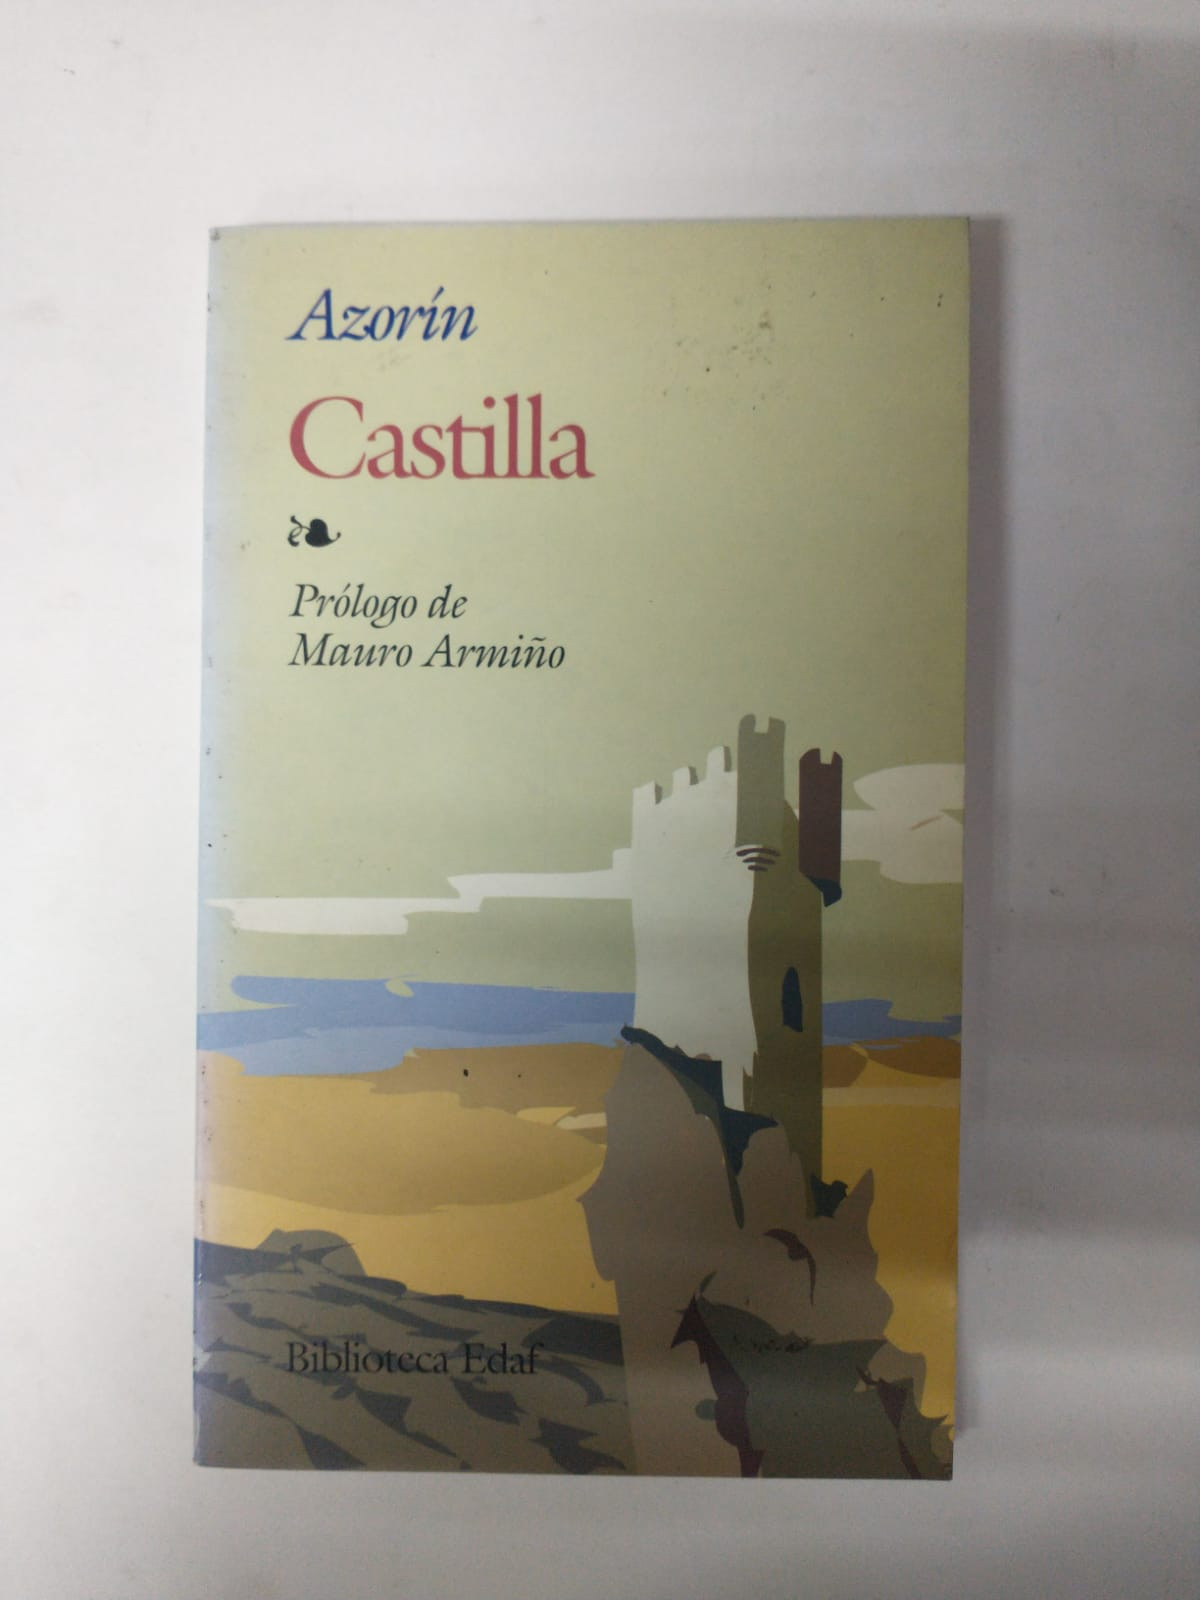 Imagen CASTILLA - AZORÍN  1